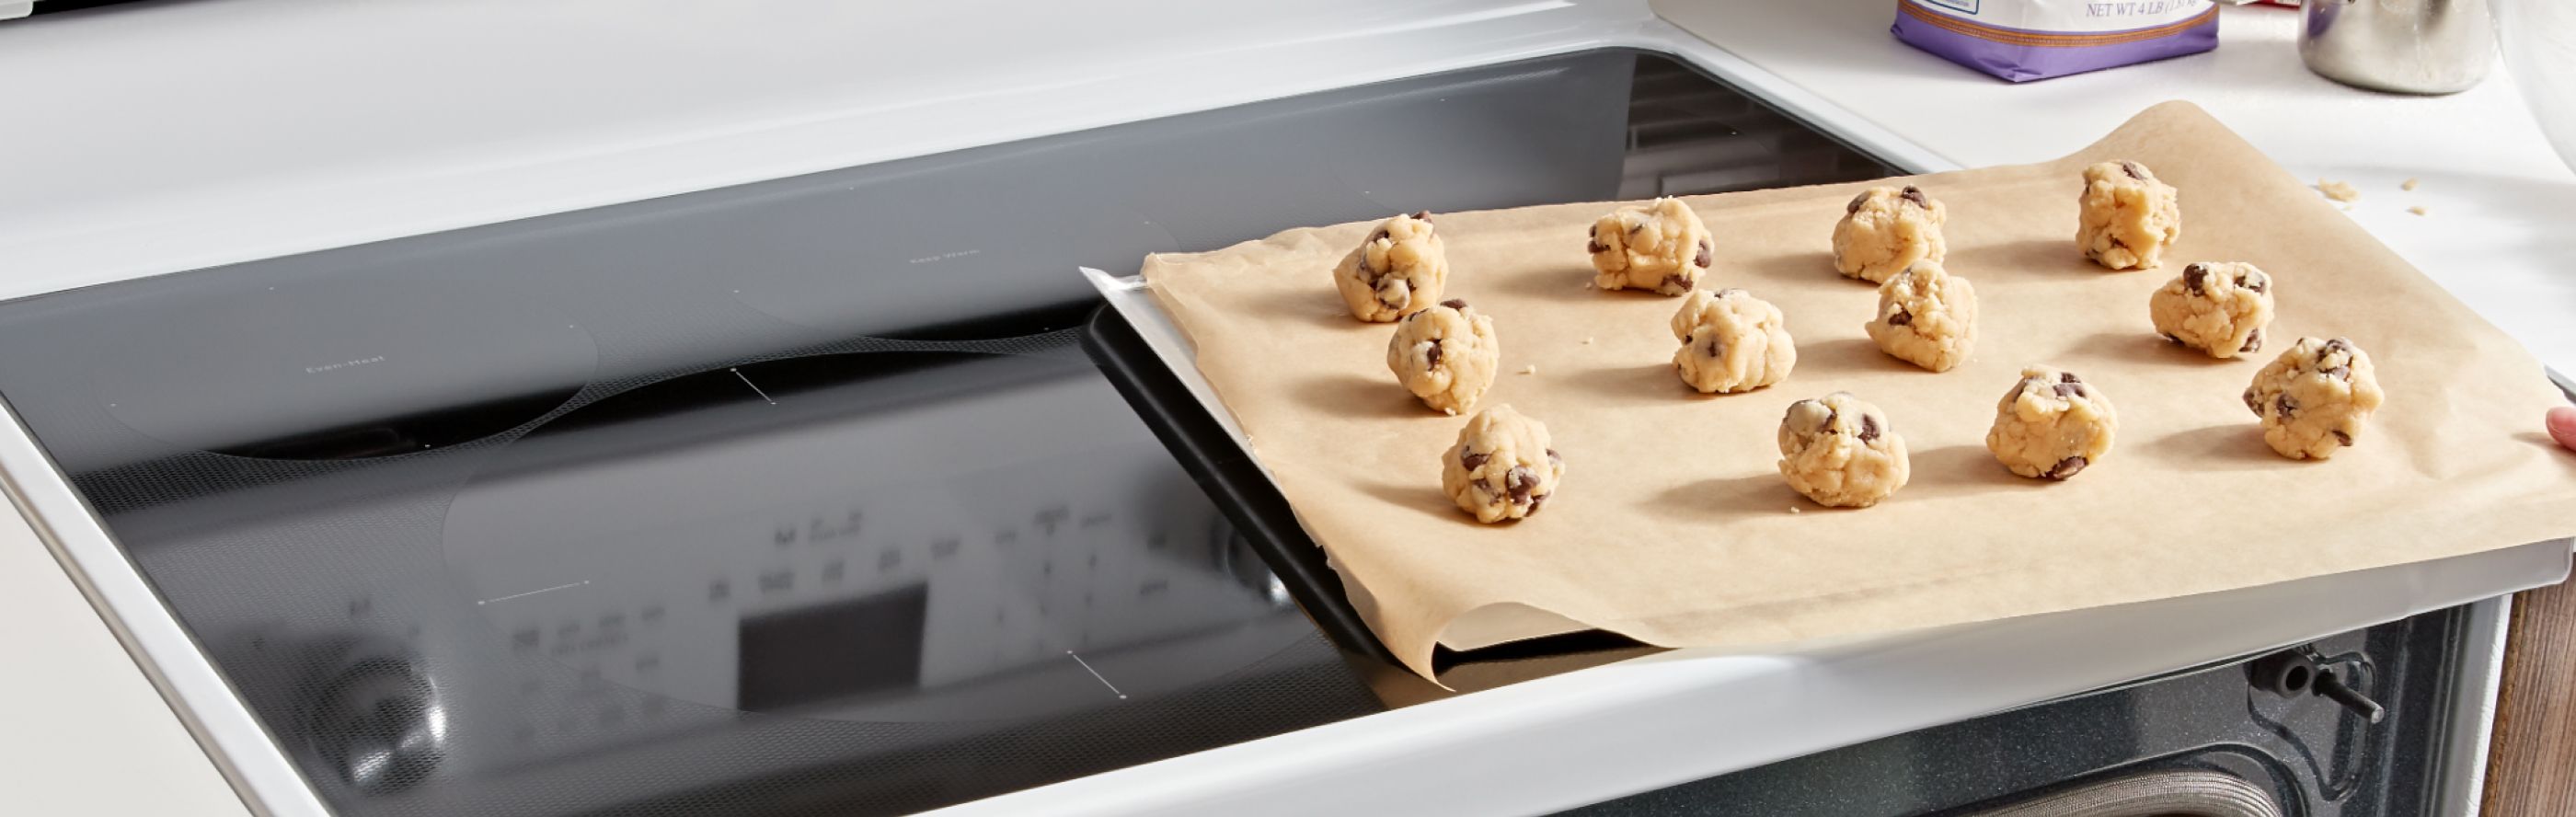 Cookie dough on parchment paper